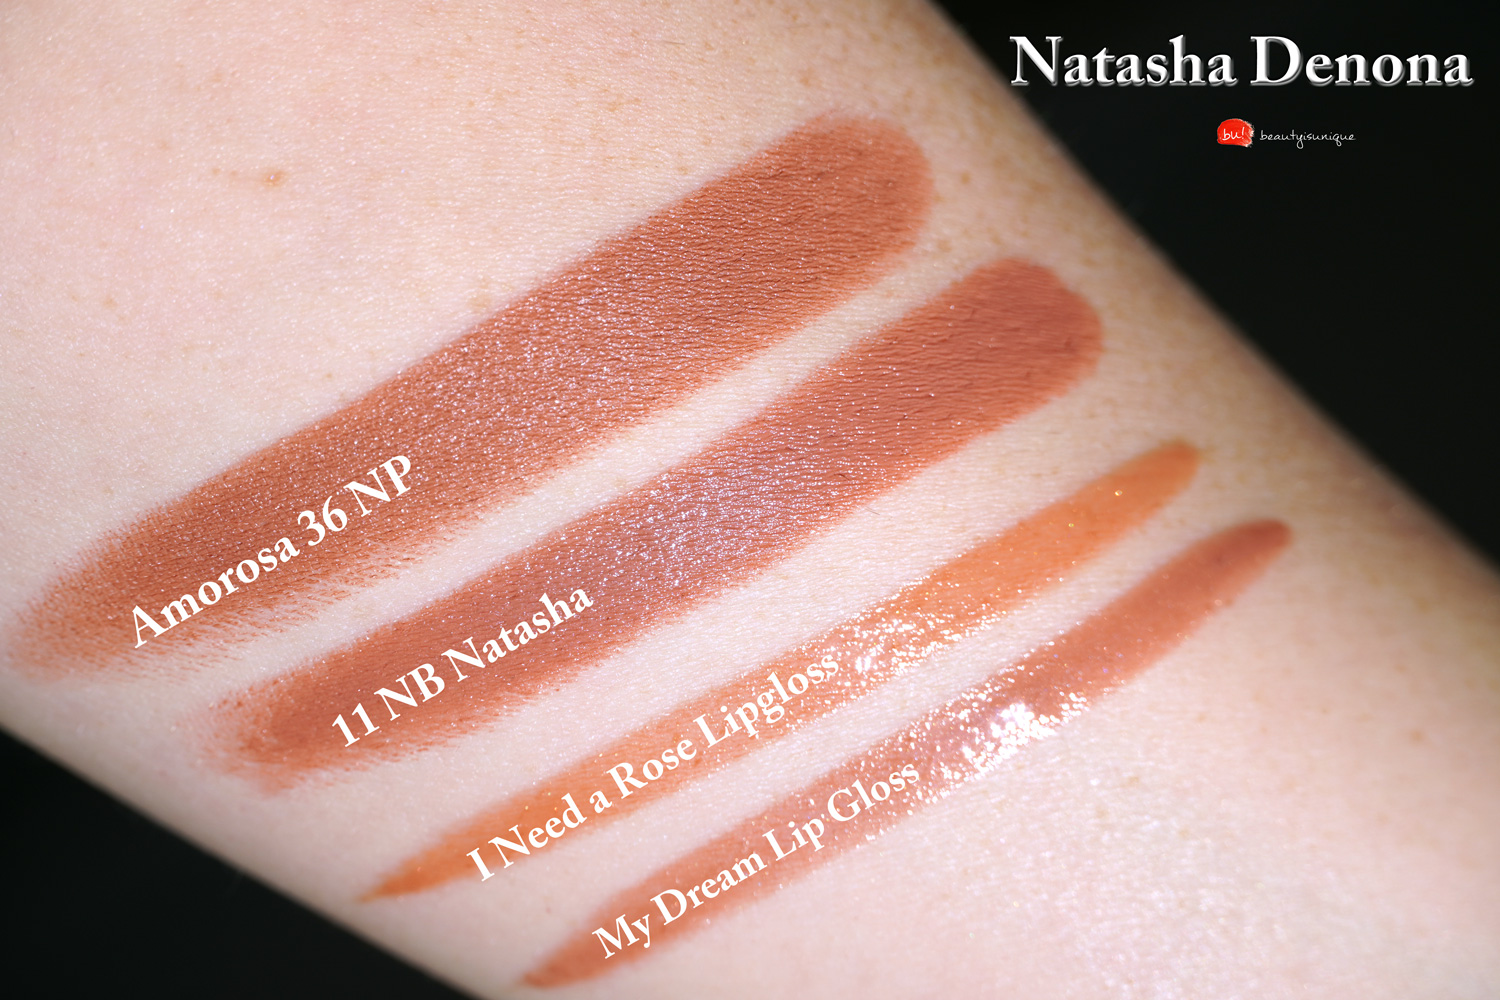 Natasha-denona-i-need-a-nude-lipstick-natasha